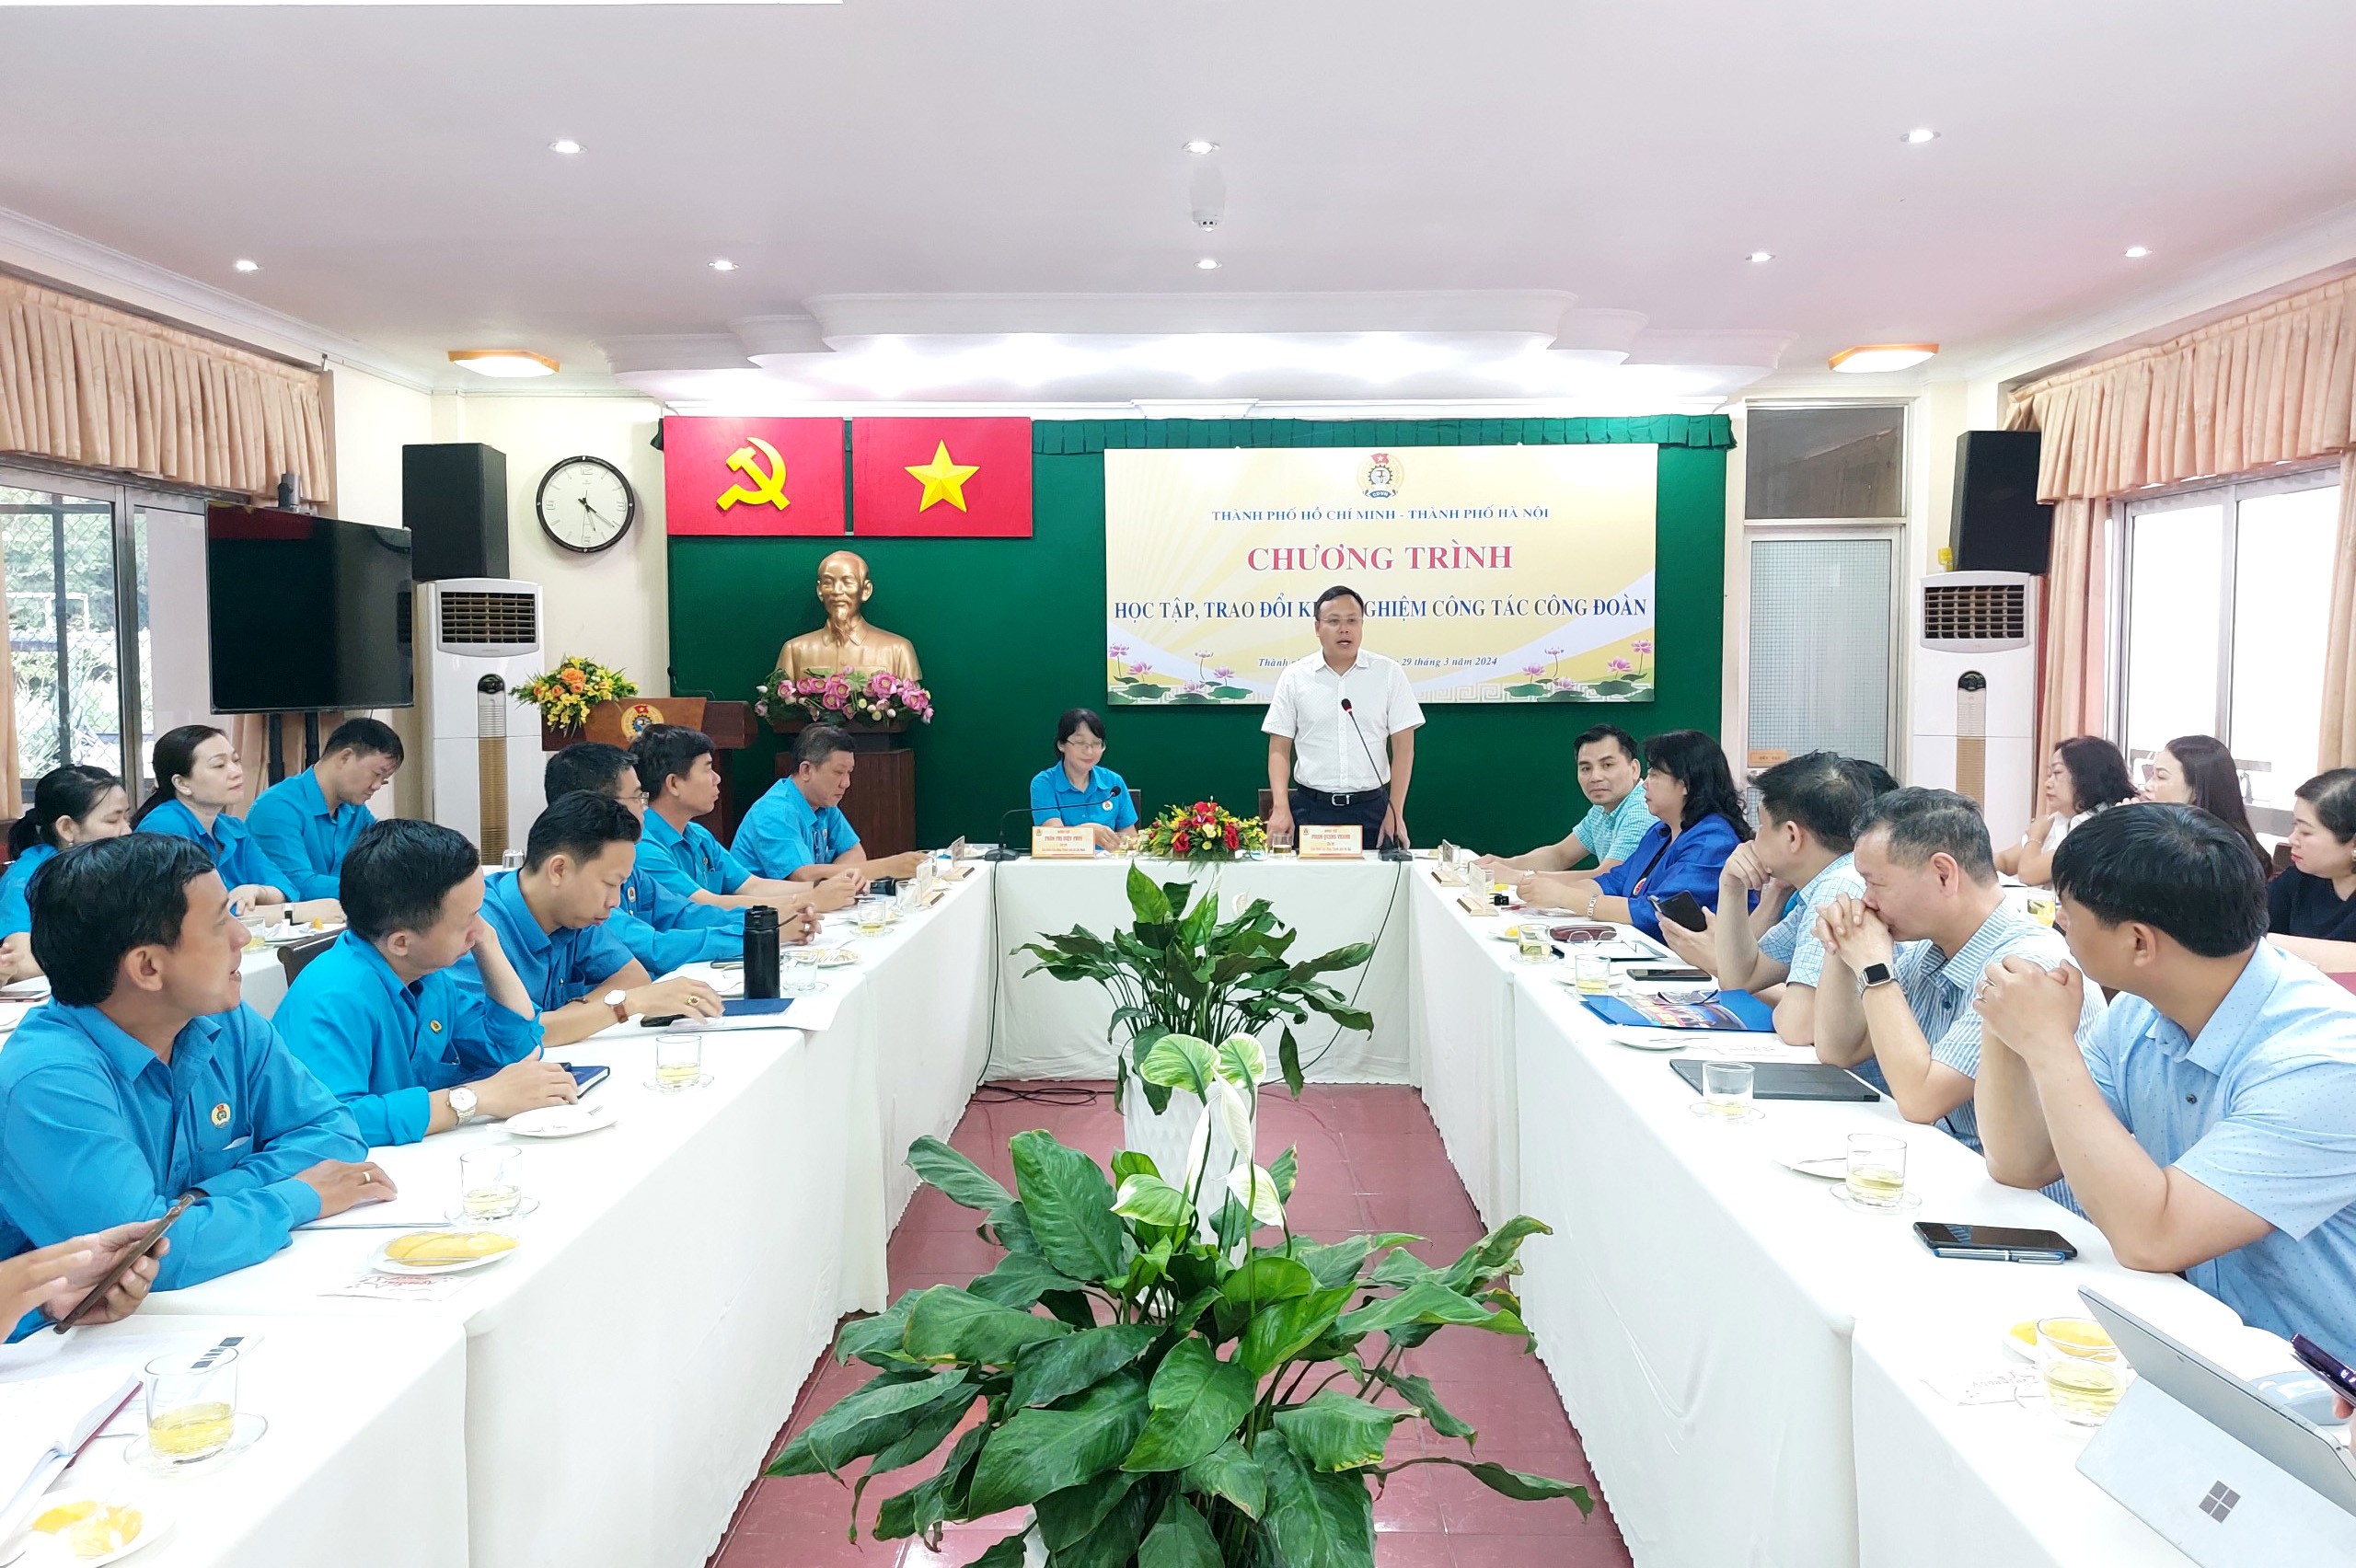 LĐLĐ Thành phố Hà Nội và LĐLĐ Thành phố Hồ Chí Minh trao đổi kinh nghiệm triển khai công tác công đoàn